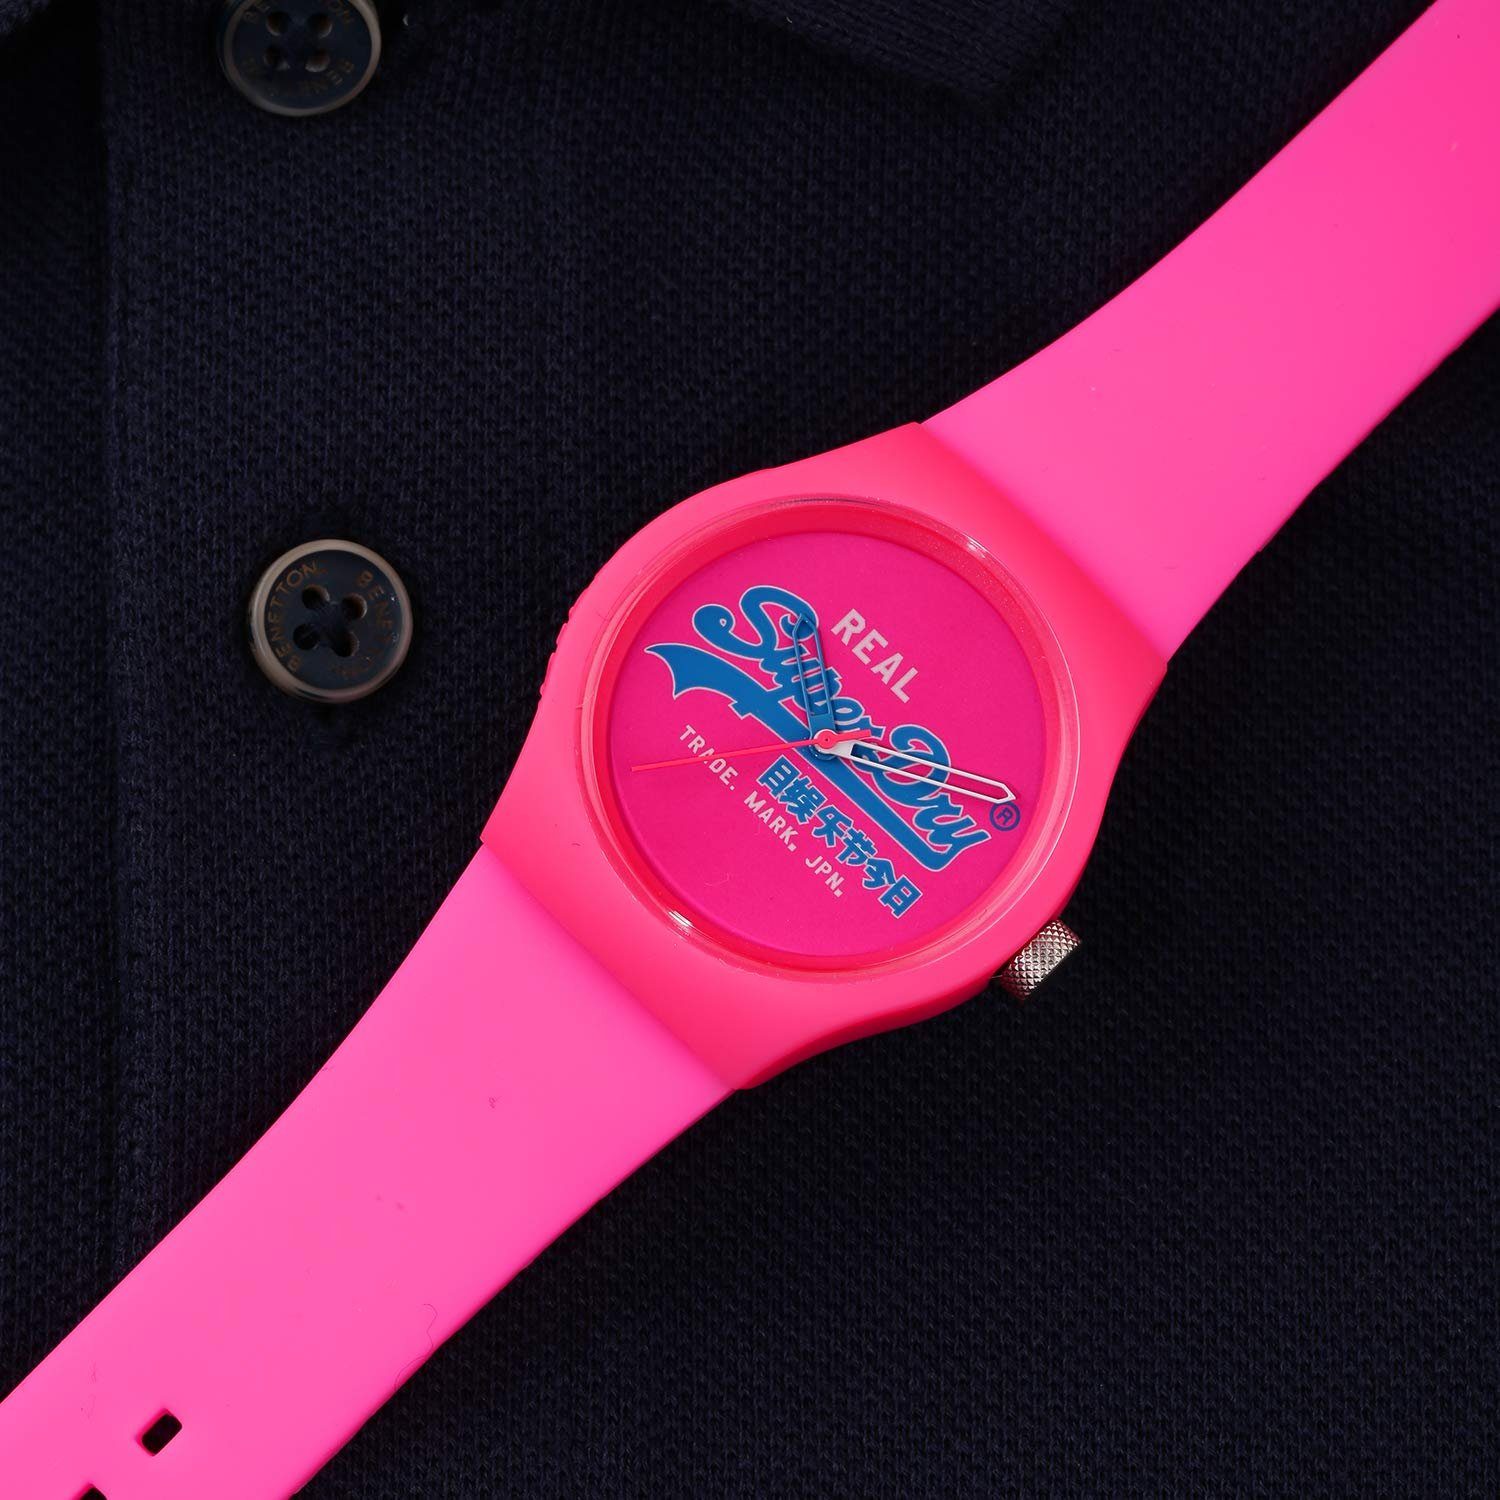 Superdry Quarzuhr, Superdry Urban Original Watch - Pink online kaufen | OTTO